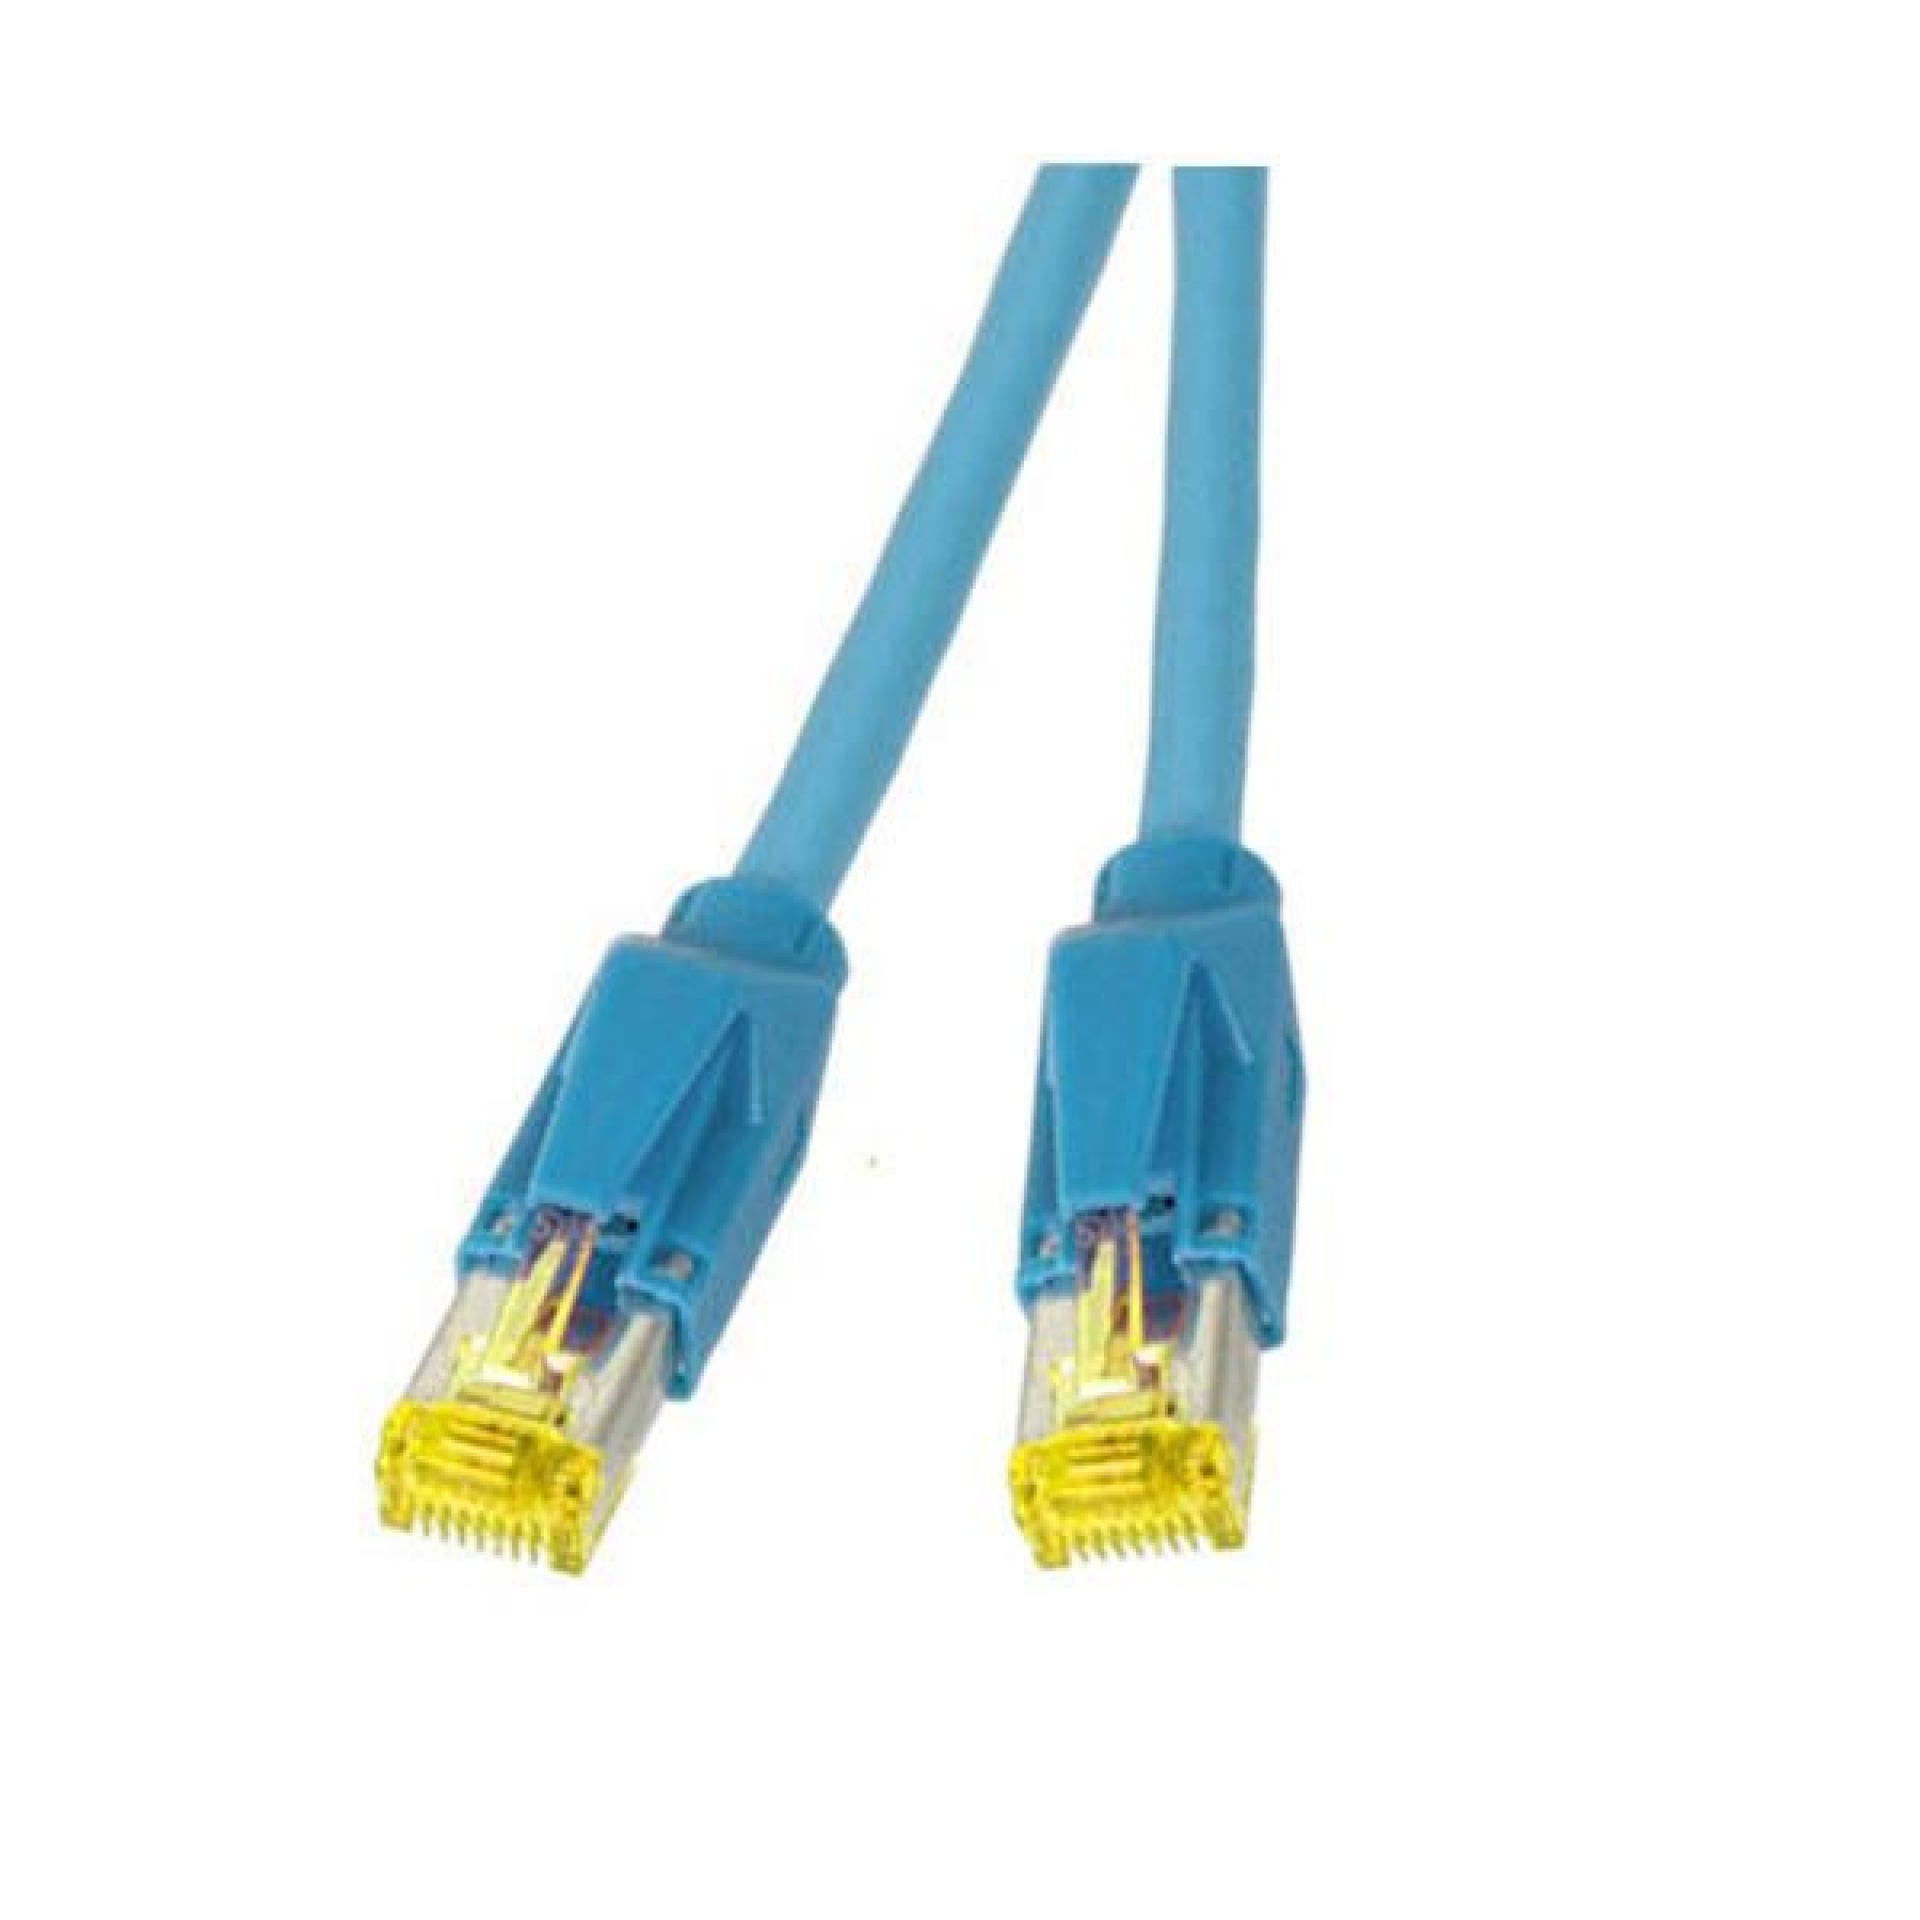 RJ45 Patch cable S/FTP, Cat.6A, TM31, Dätwyler 7702, 1m, blue